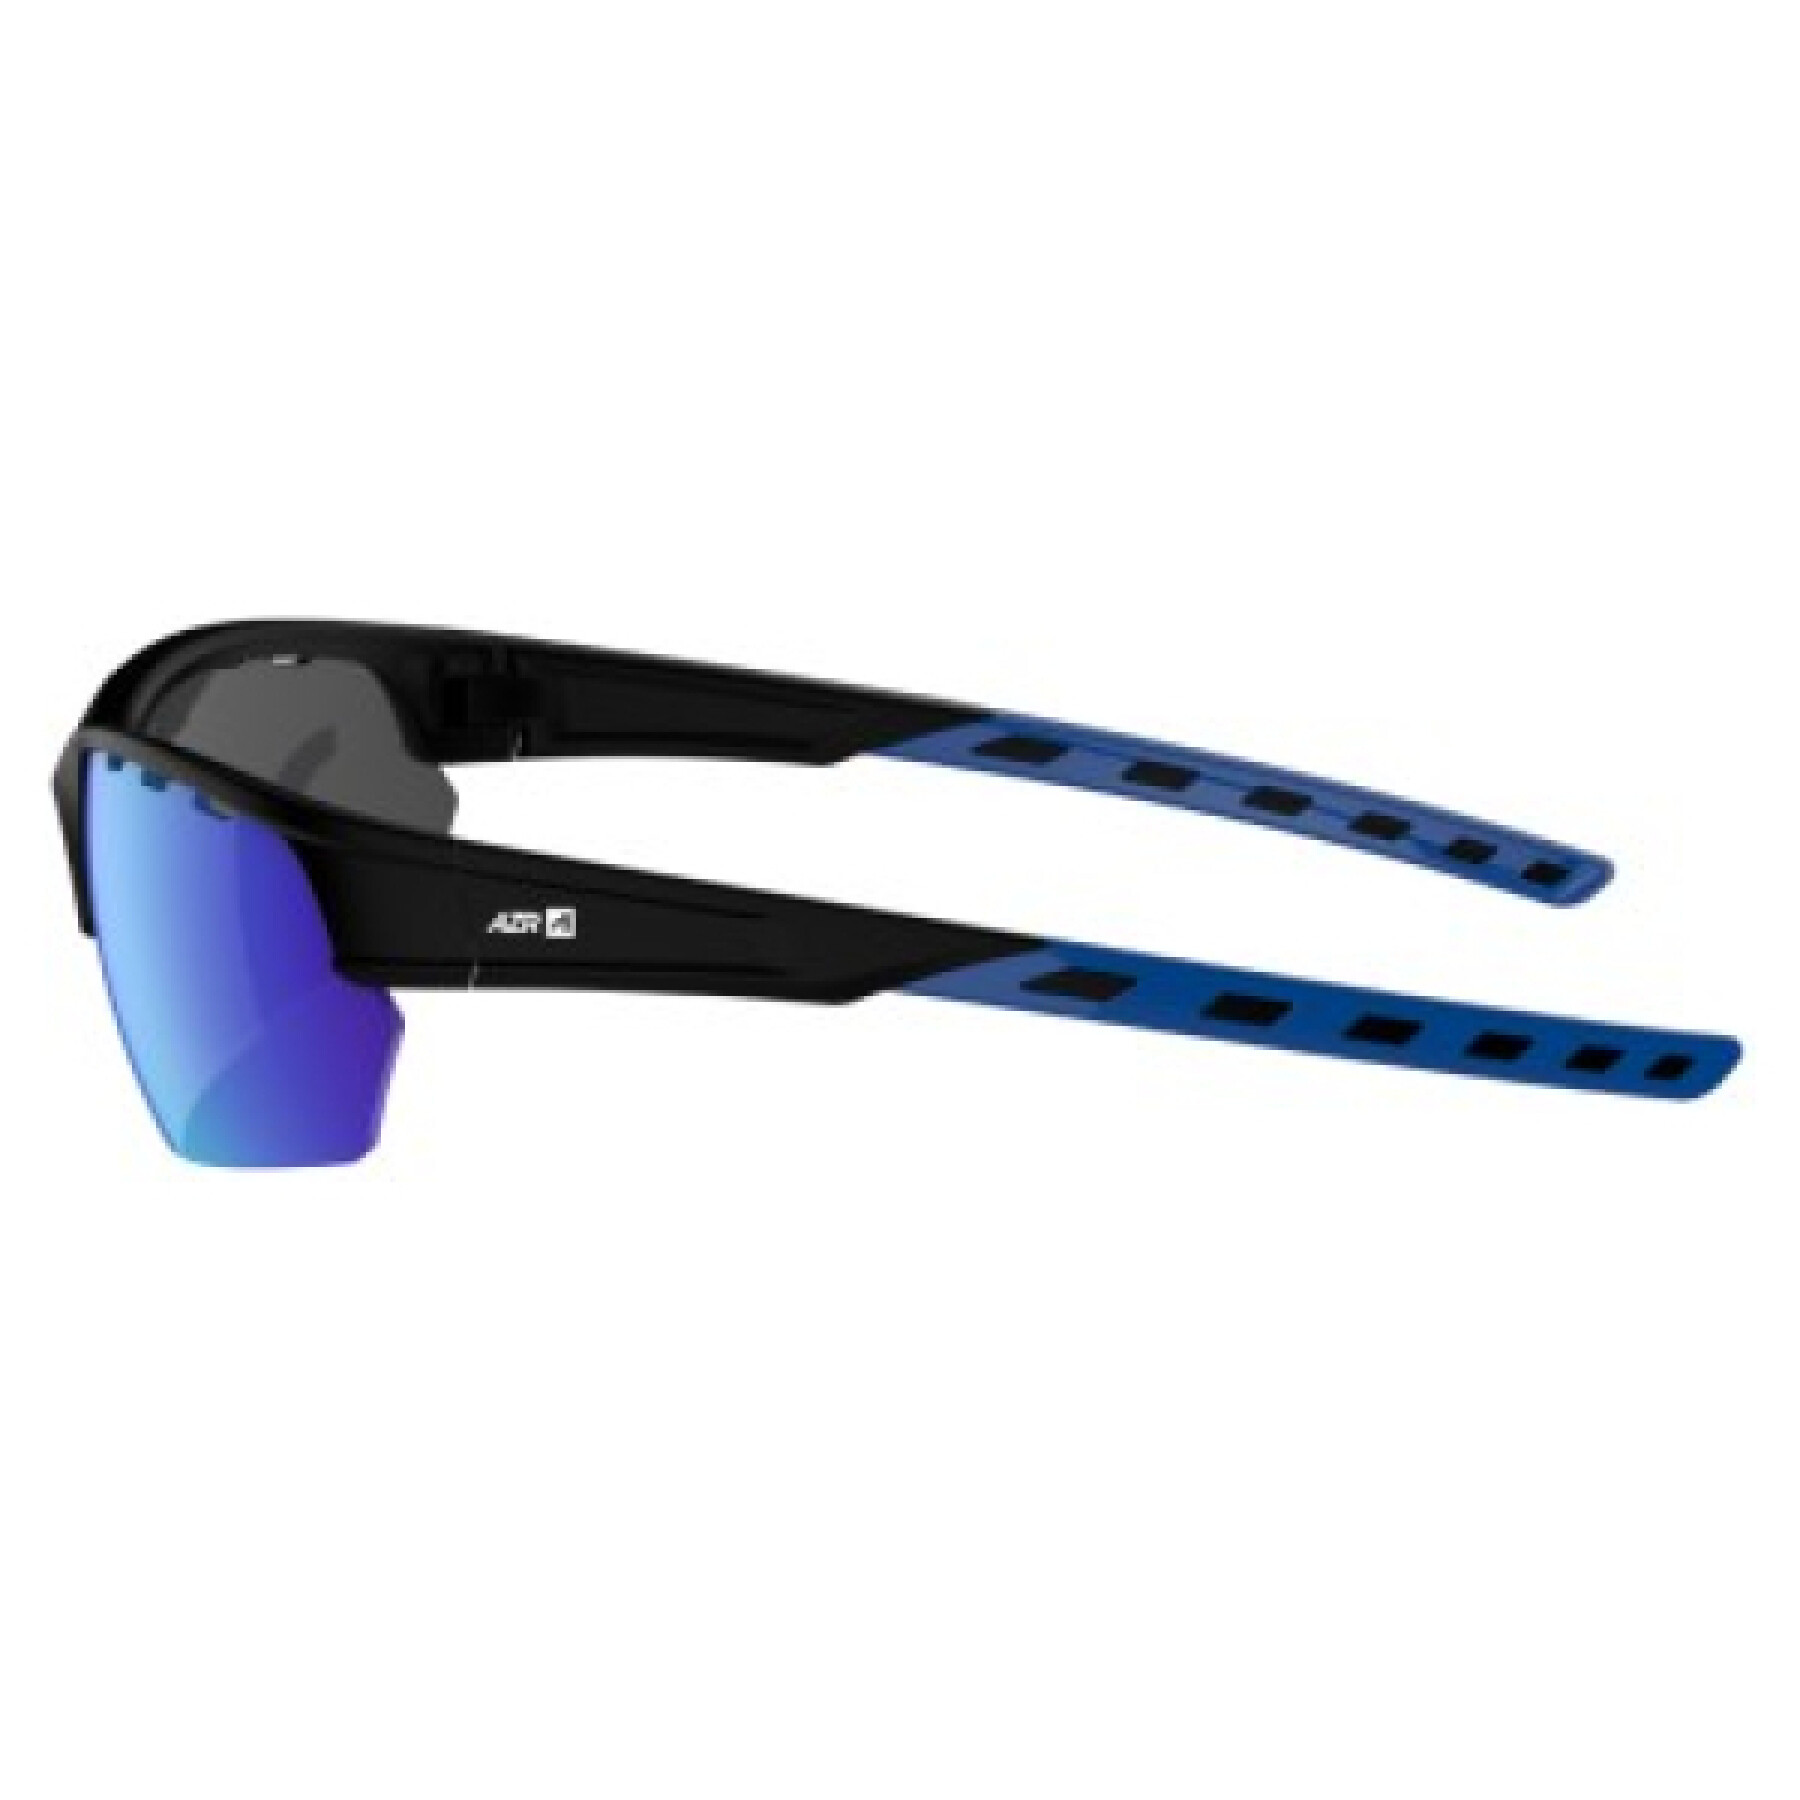 Gafas de sol AZR Pro Izoard